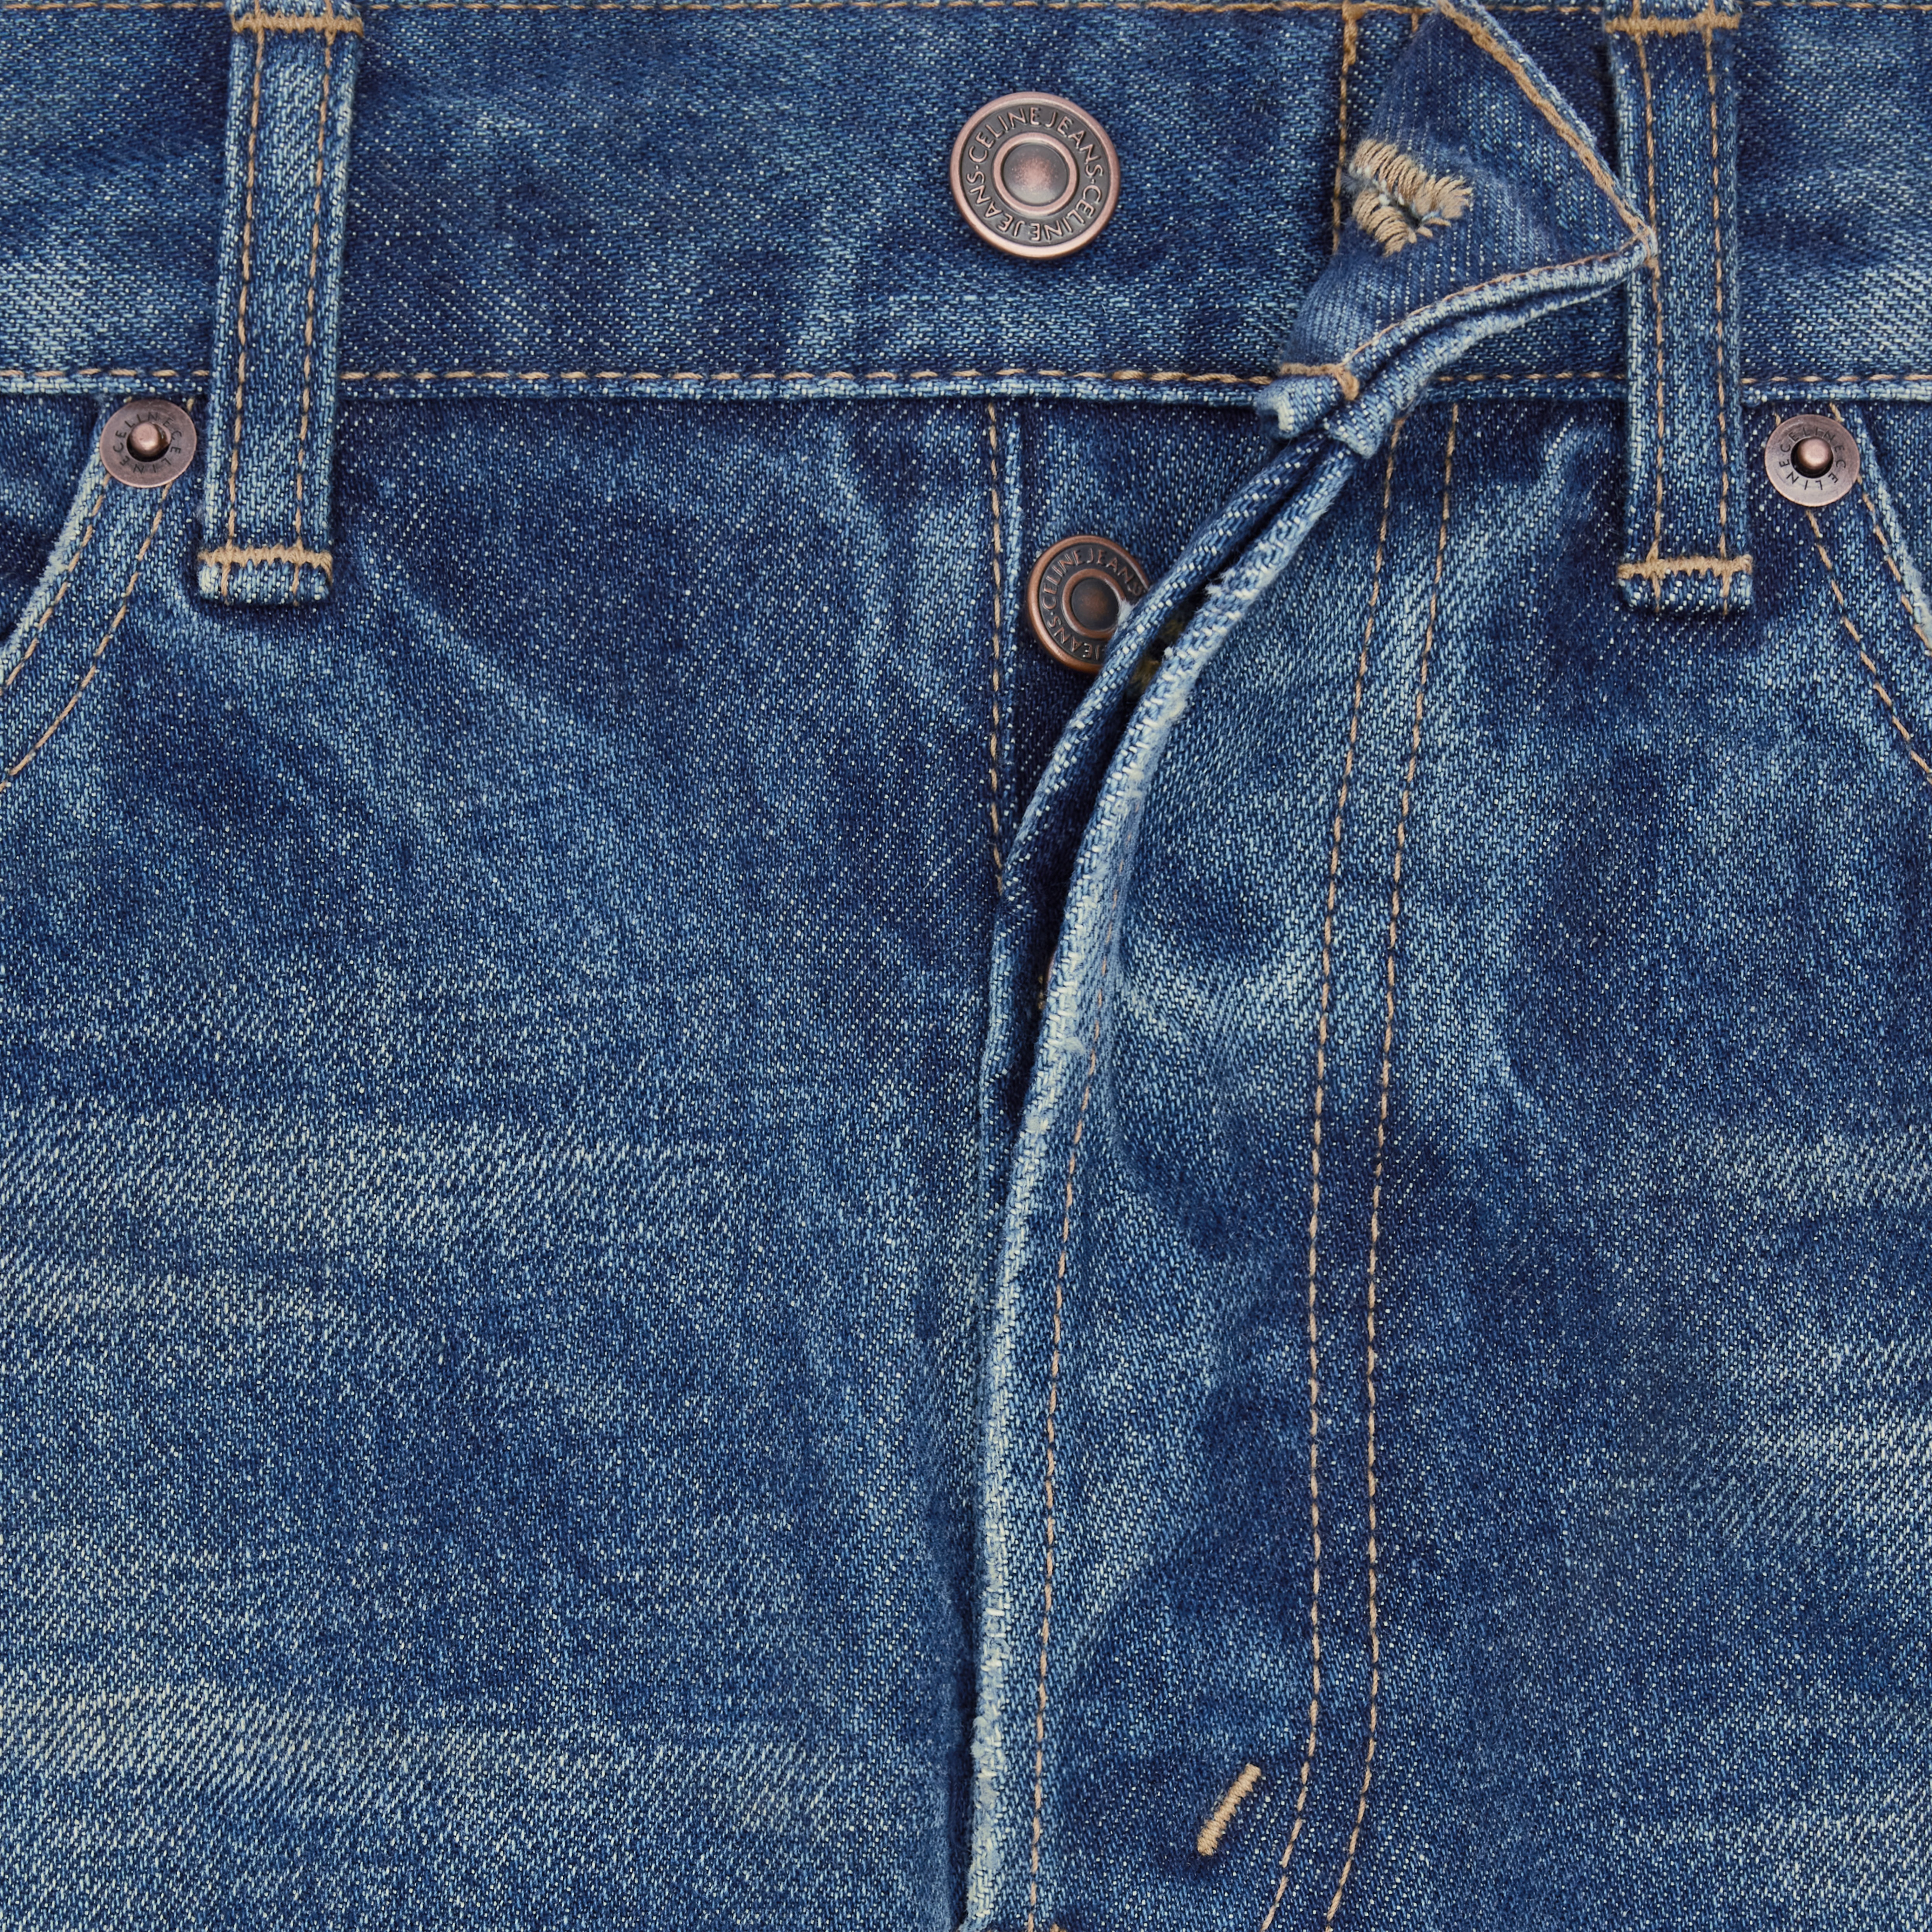 Lou jeans in vintage dark union wash denim - 4